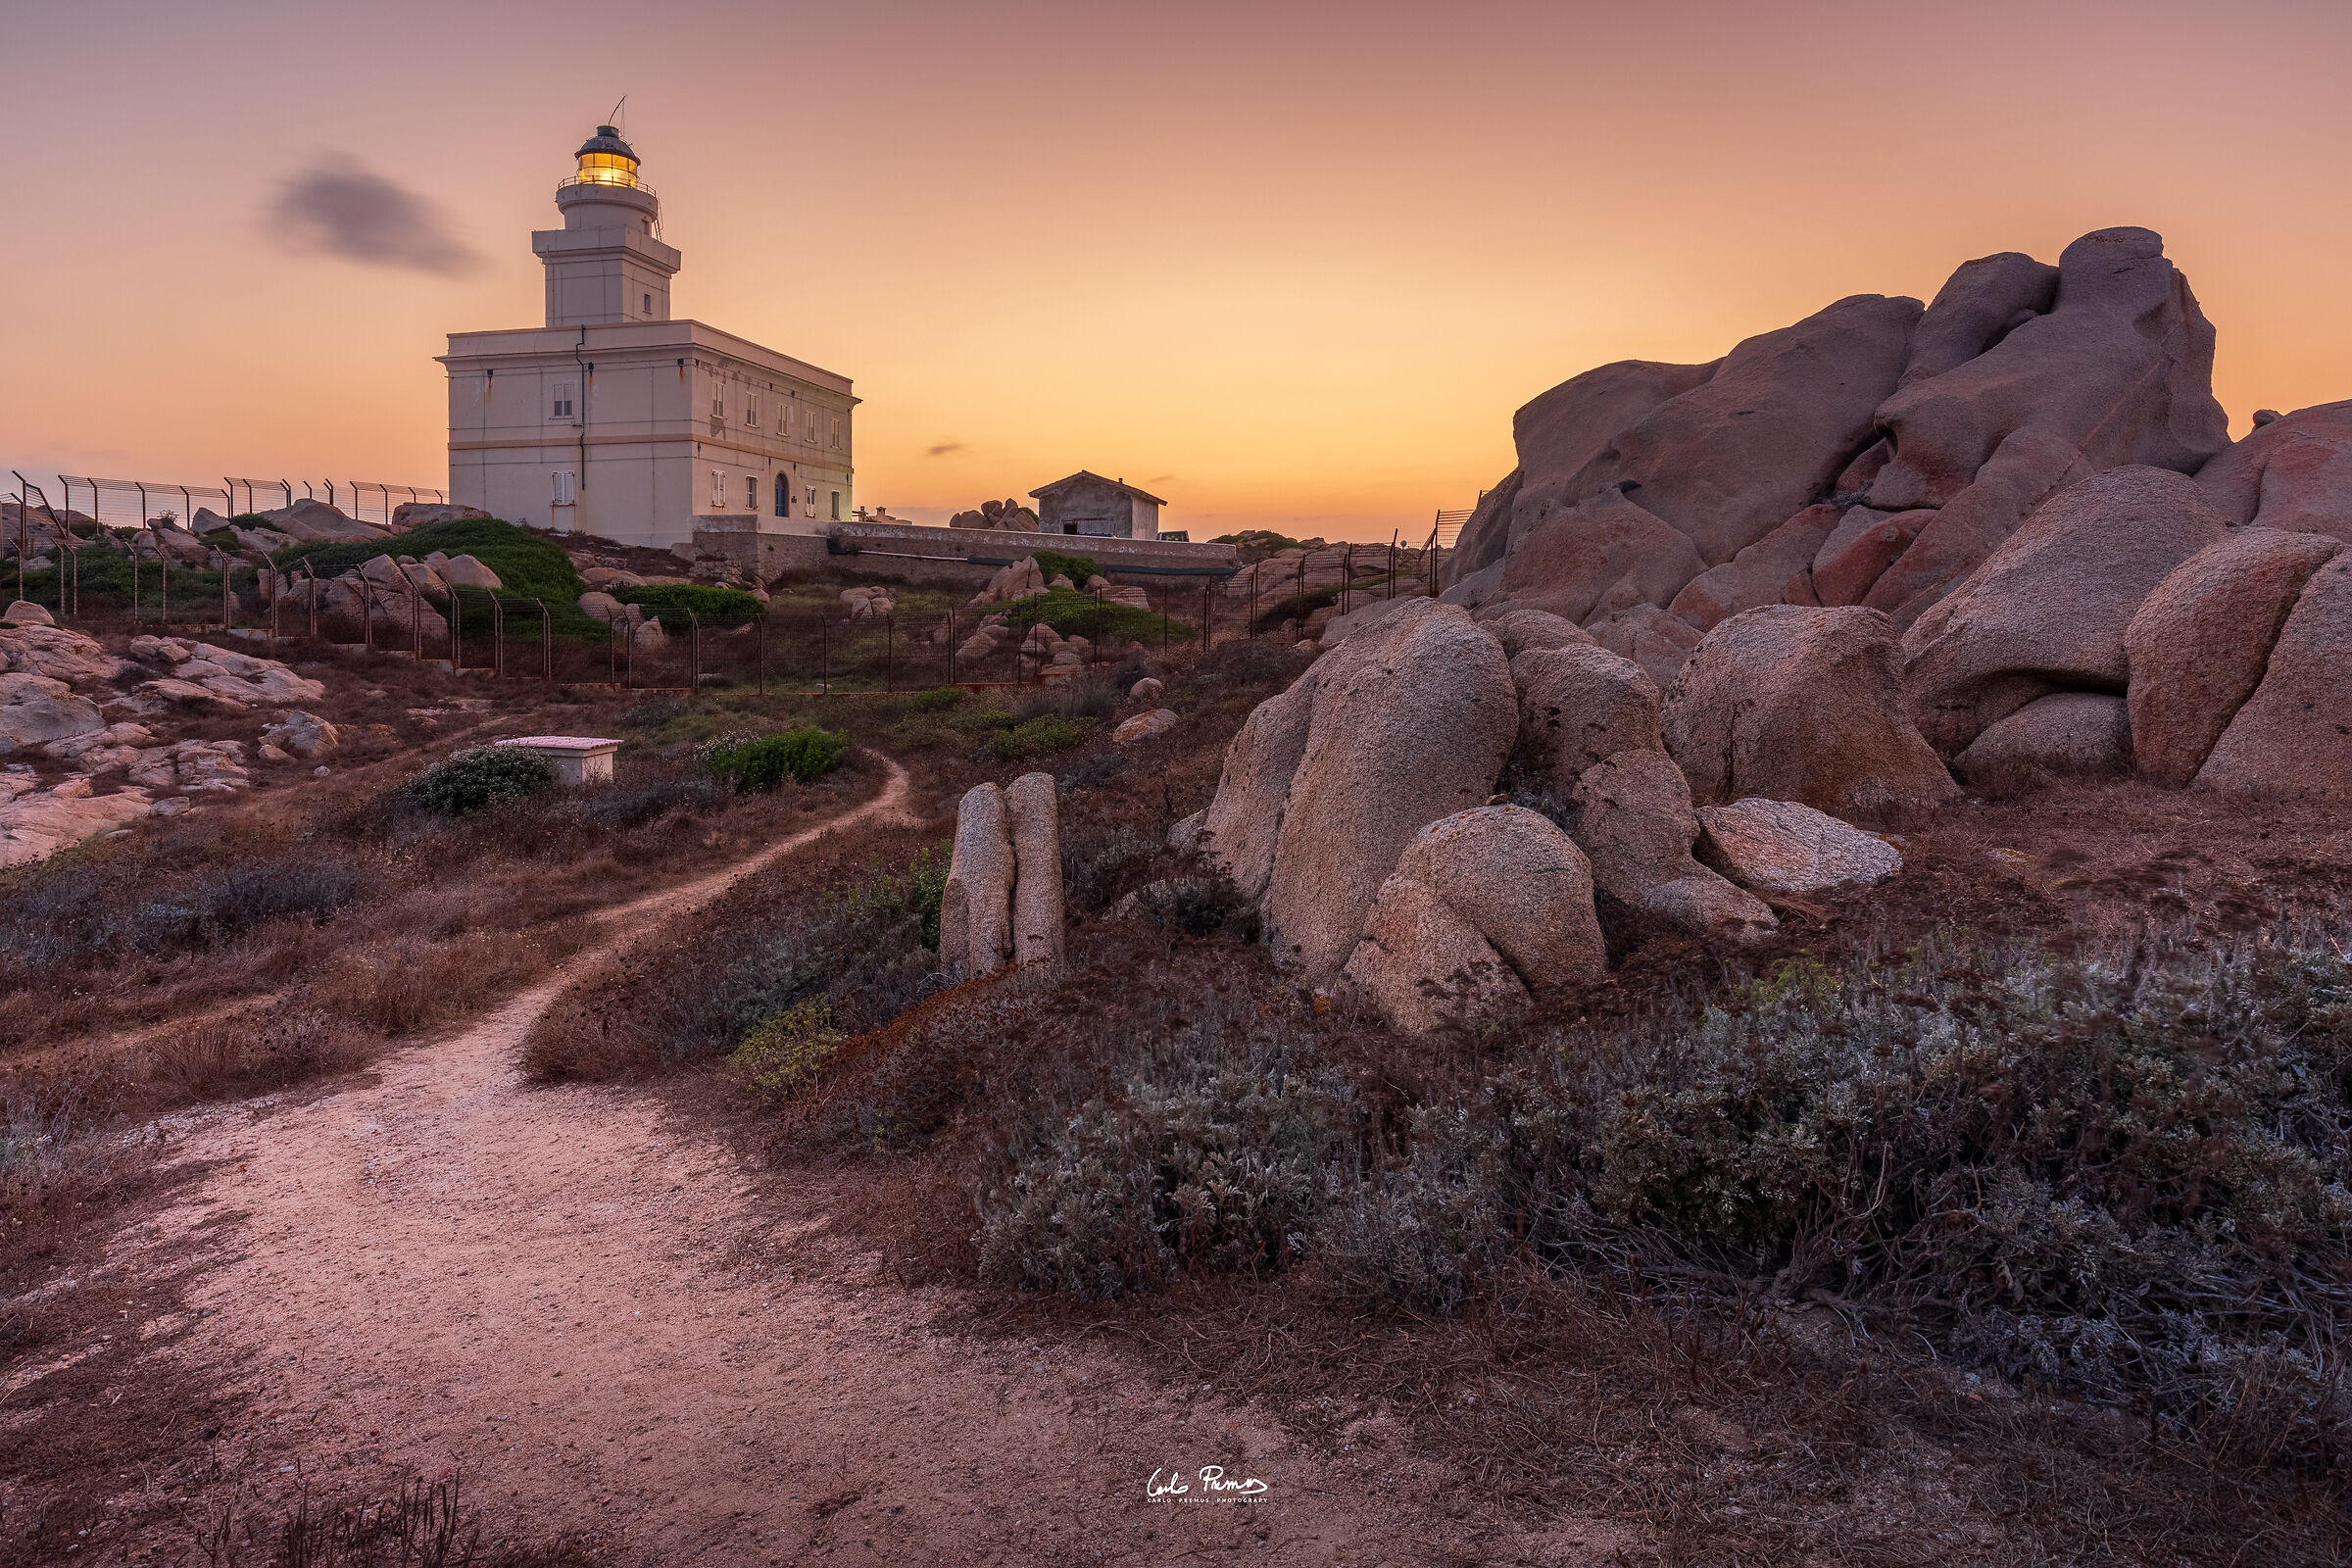 The lighthouse of Capo Testa...